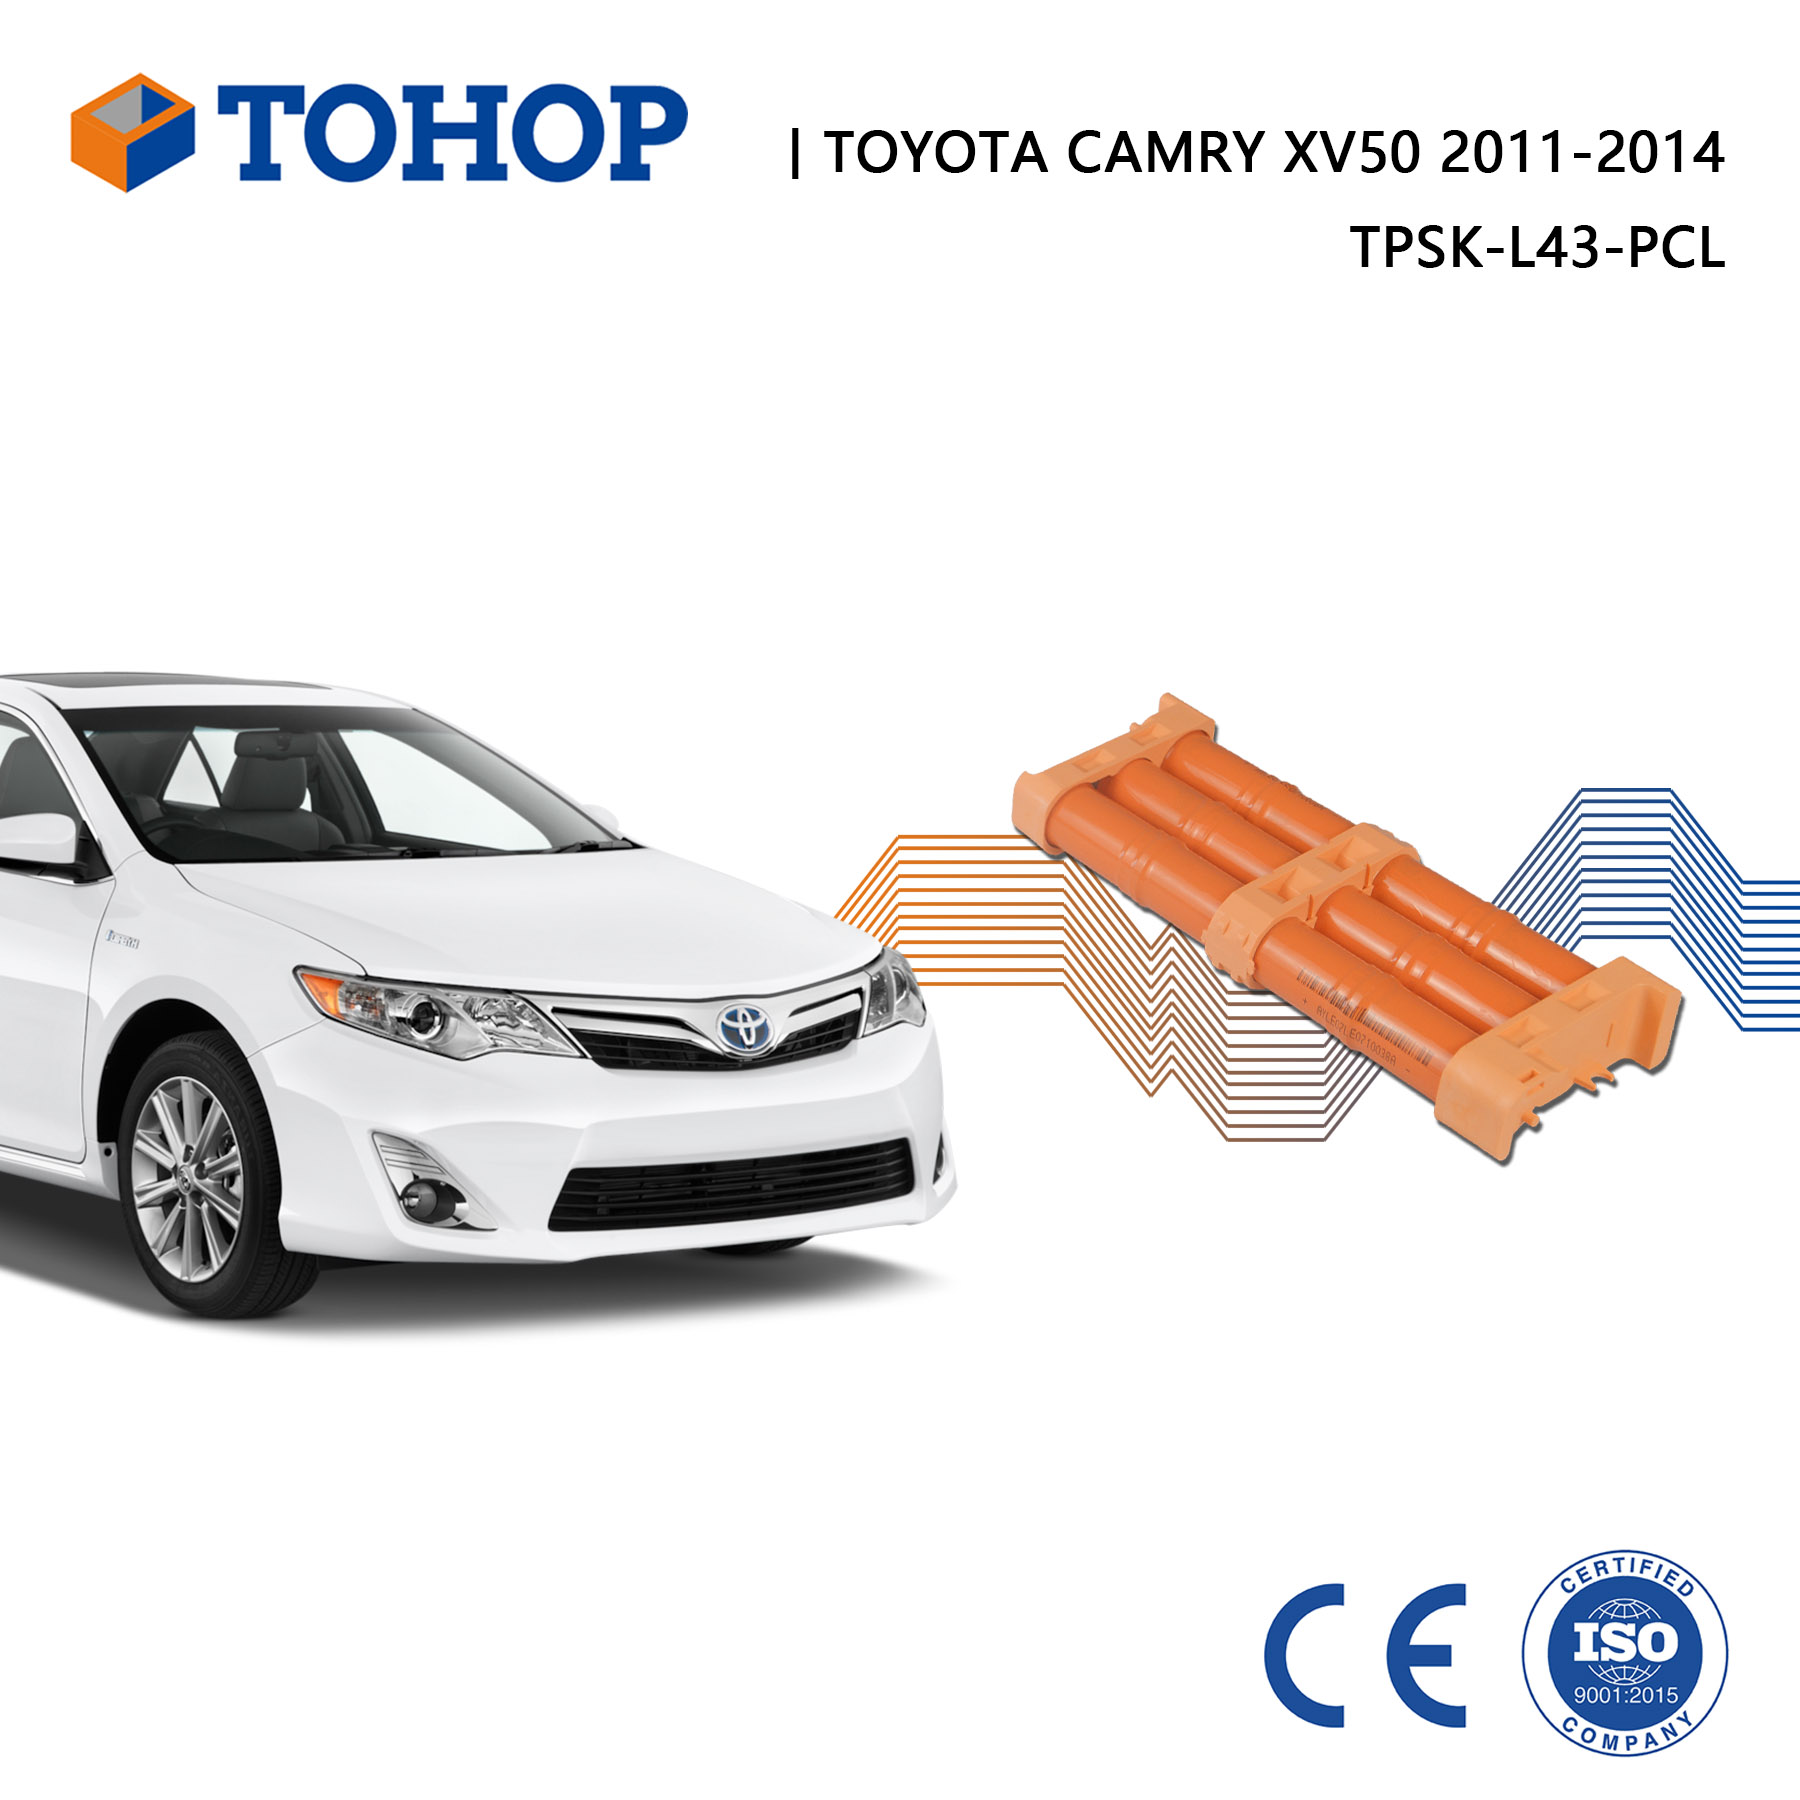 Brand New Camry XV50 2014 14.4V Hybrid Battery Pack for Toyota